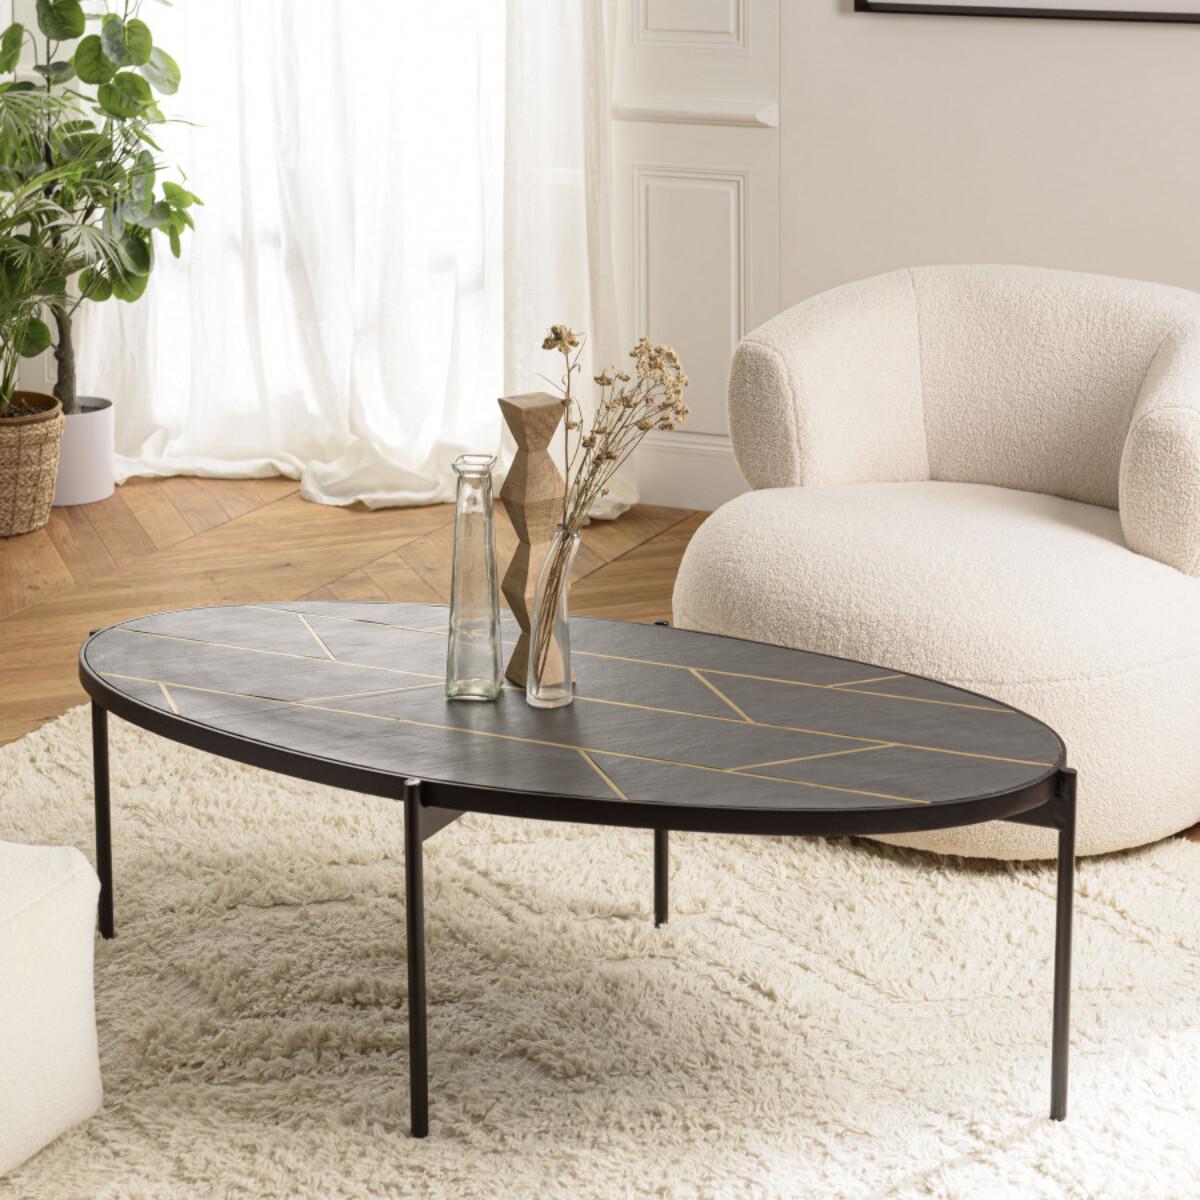 BASILE - Table basse ovale 131x65cm effet pierre motifs dorés